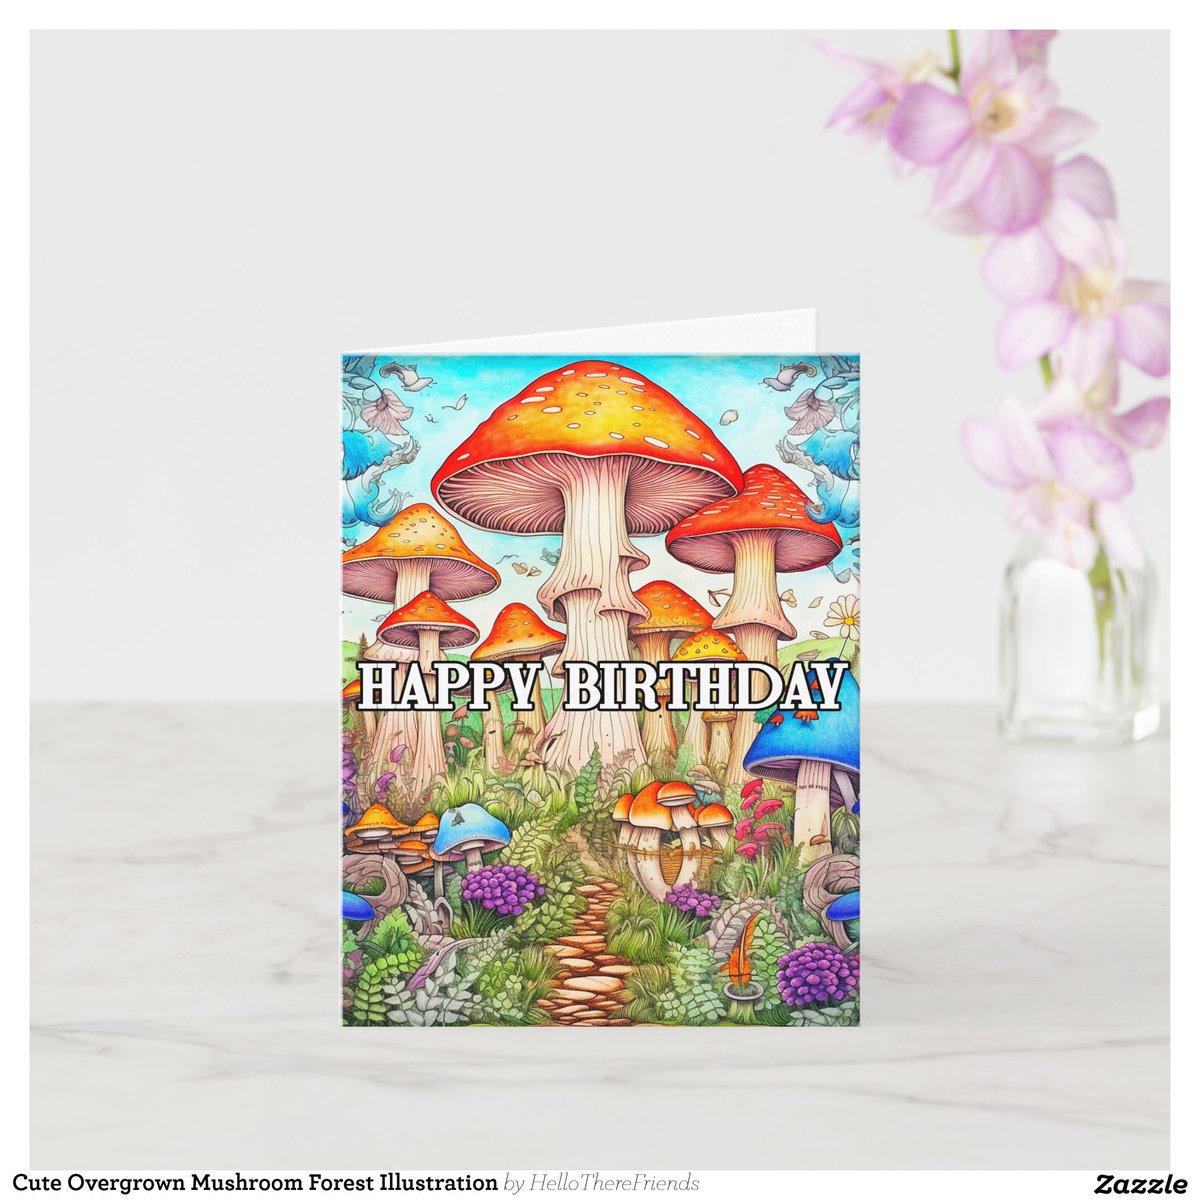 Cute Overgrown Mushroom Forest Illustration Card→zazzle.com/z/a0svoo6y?rf=…

#GreetingCards #BirthdayCards #Cards #Birthdays #MushroomArt #PsychedelicArt #MagicalMushrooms #Mushrooms #Illustration #Retro #Zazzle